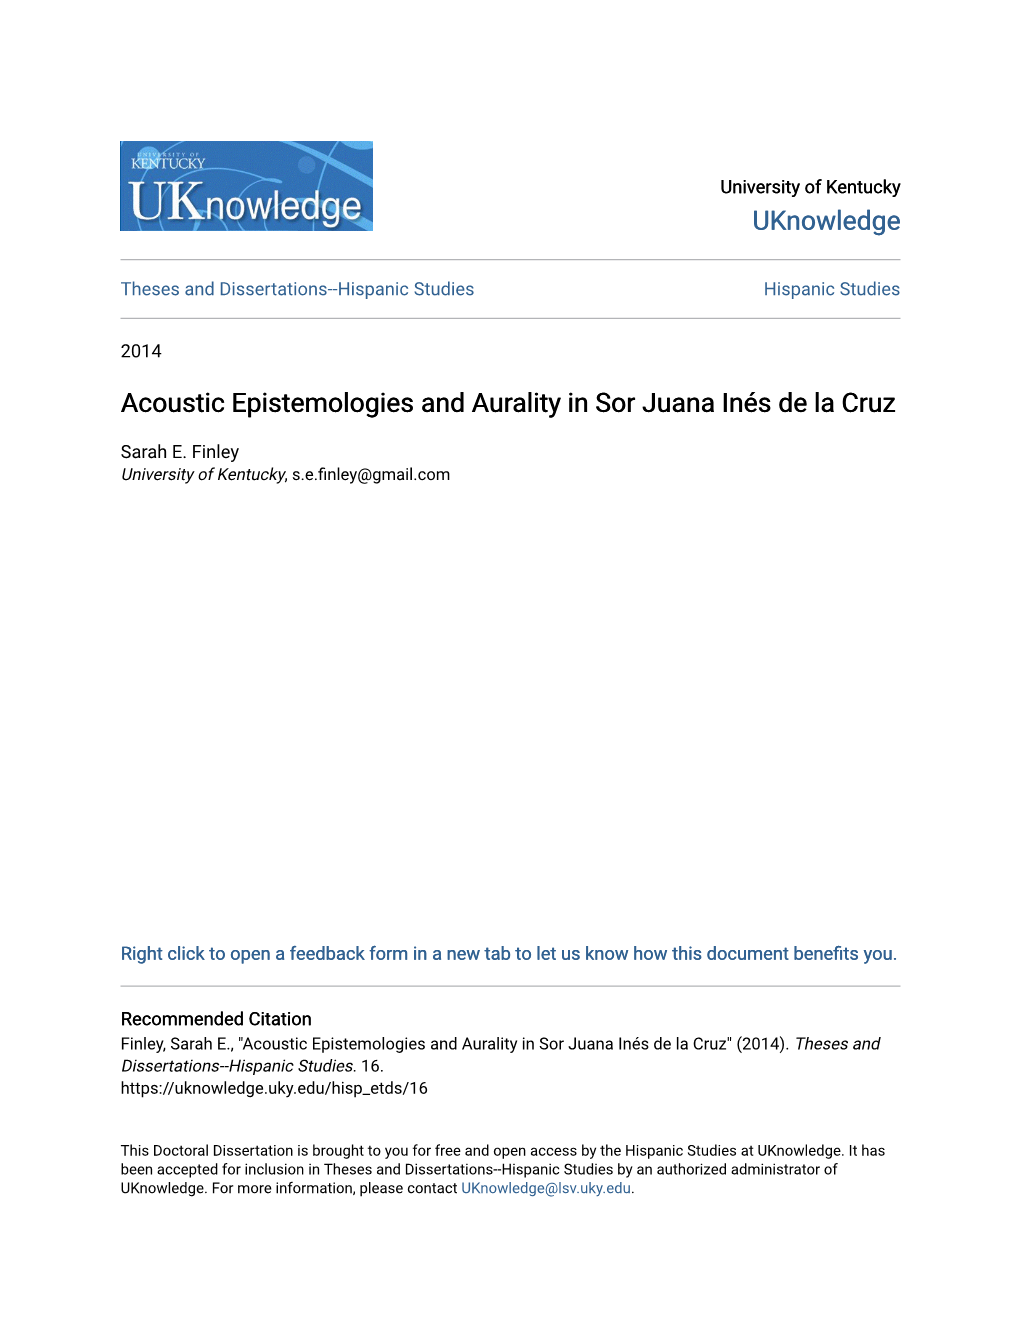 Acoustic Epistemologies and Aurality in Sor Juana Inés De La Cruz